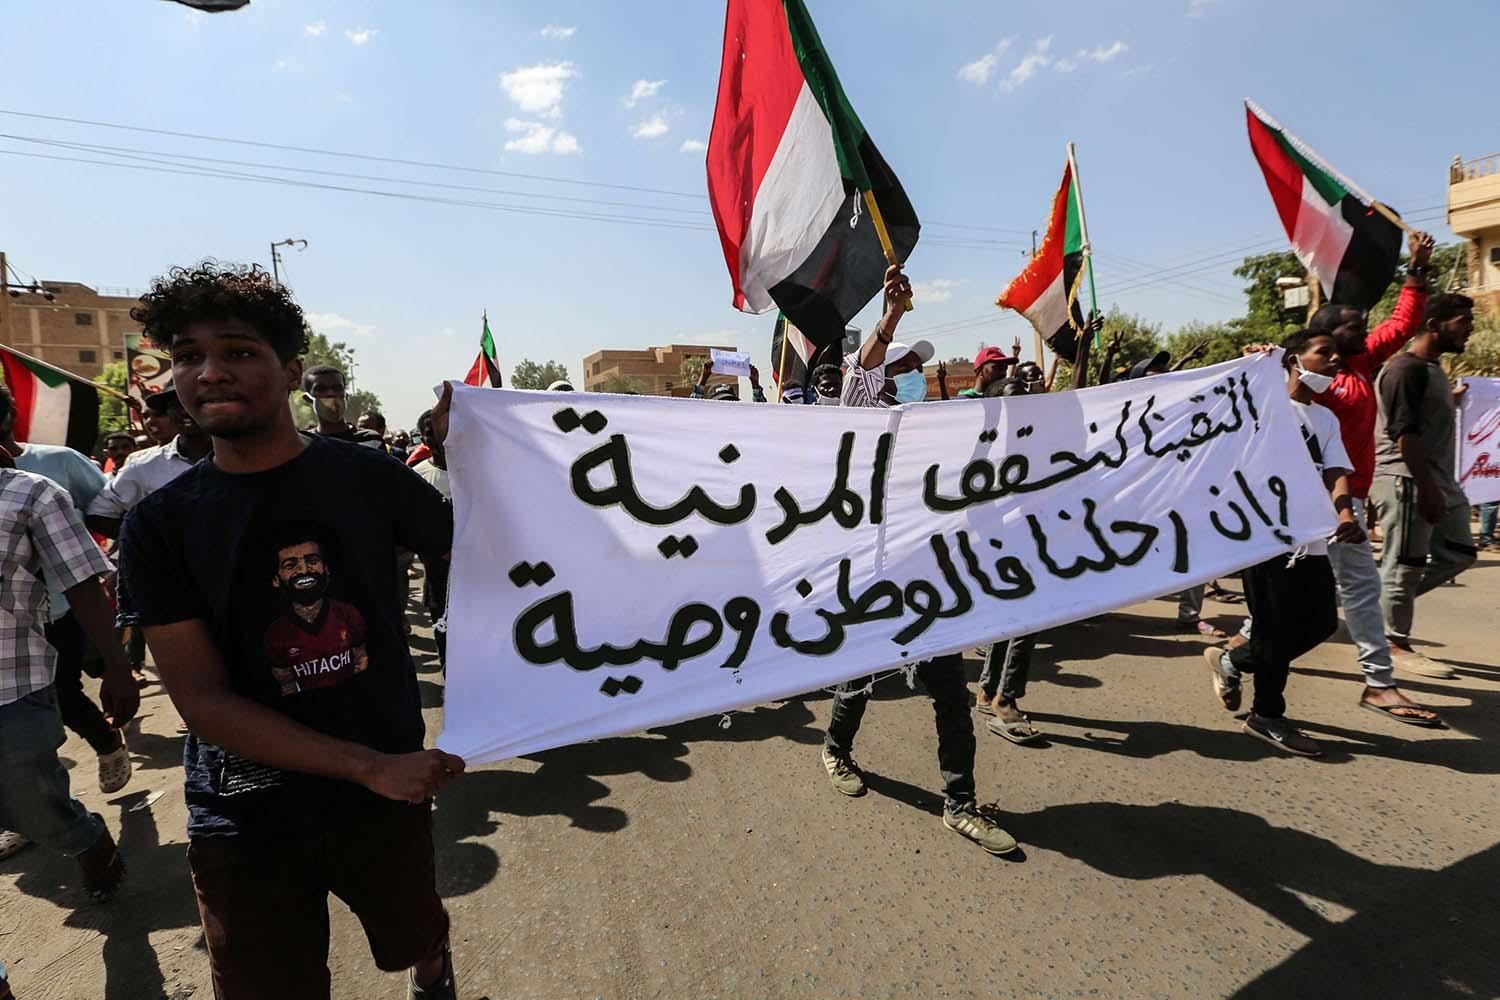 ضغط دولي لحل الازمة السودانية واتفاق مبدئي بين الجيش وحمدوك